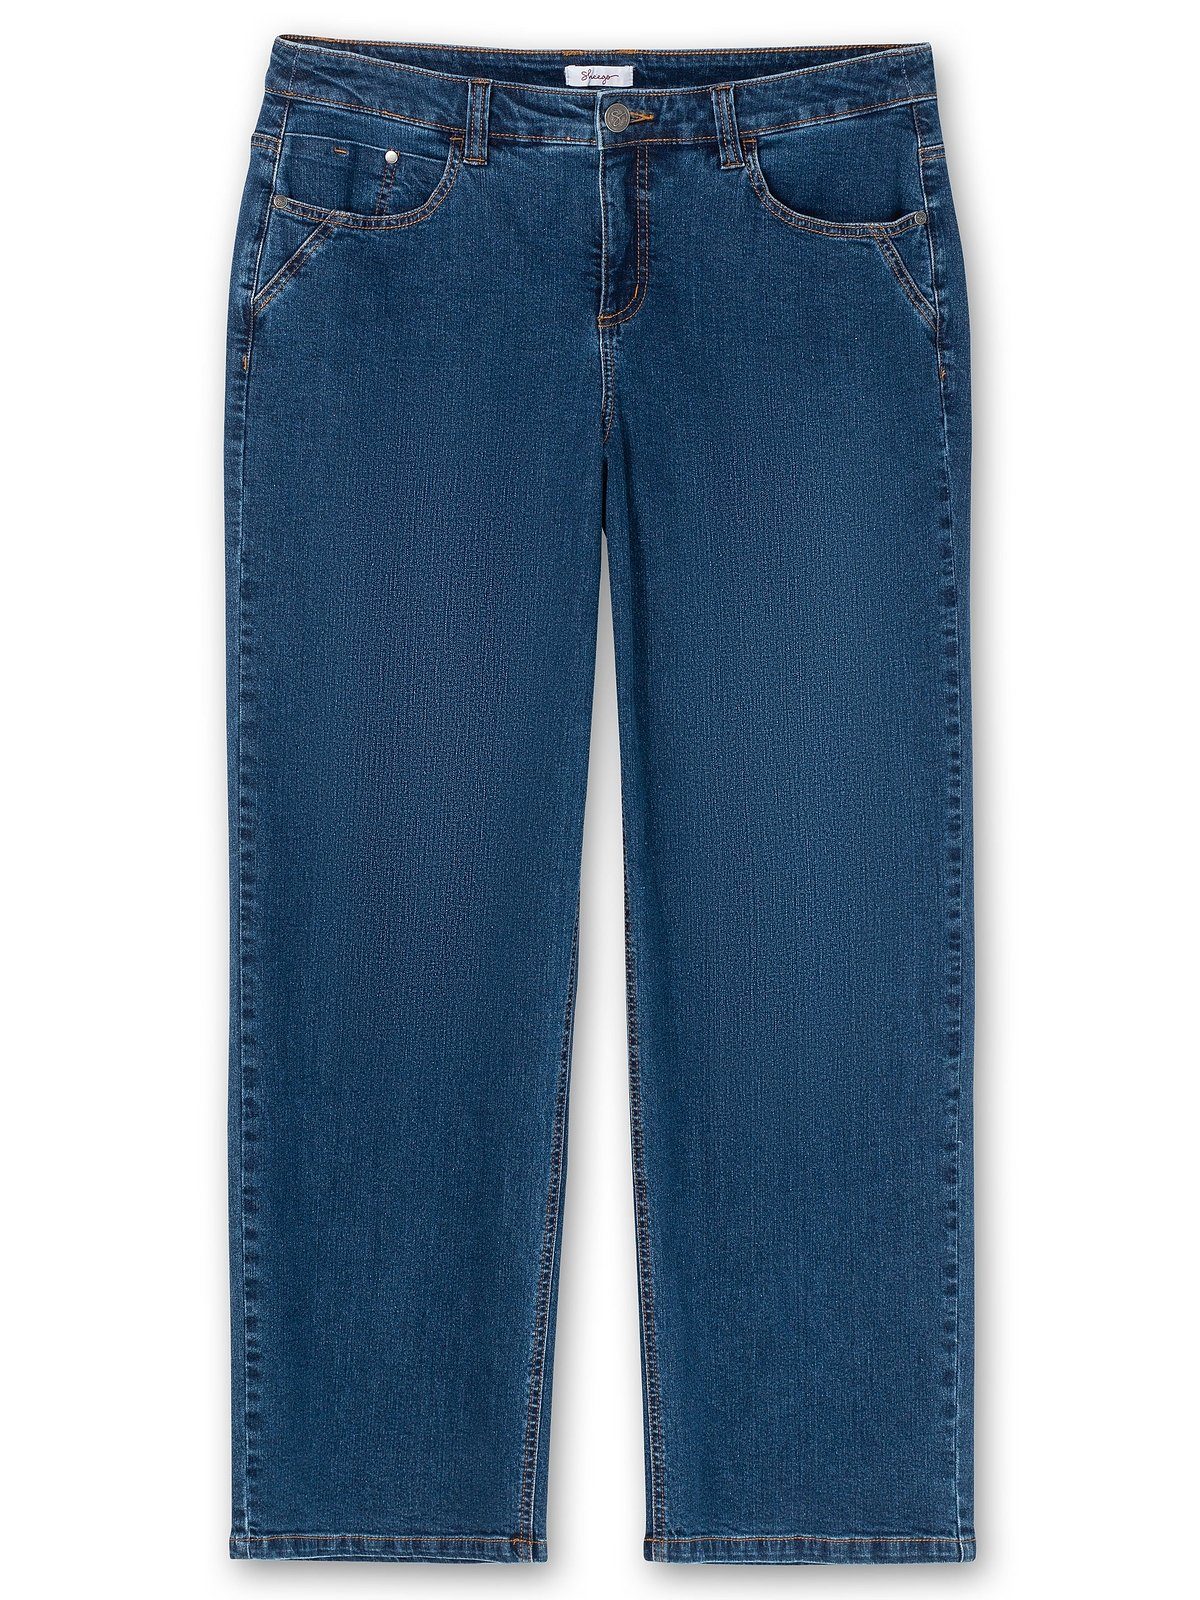 ELLA Weite Denim Jeans Oberschenkel blue kräftige Sheego und Waden Größen Große dark für